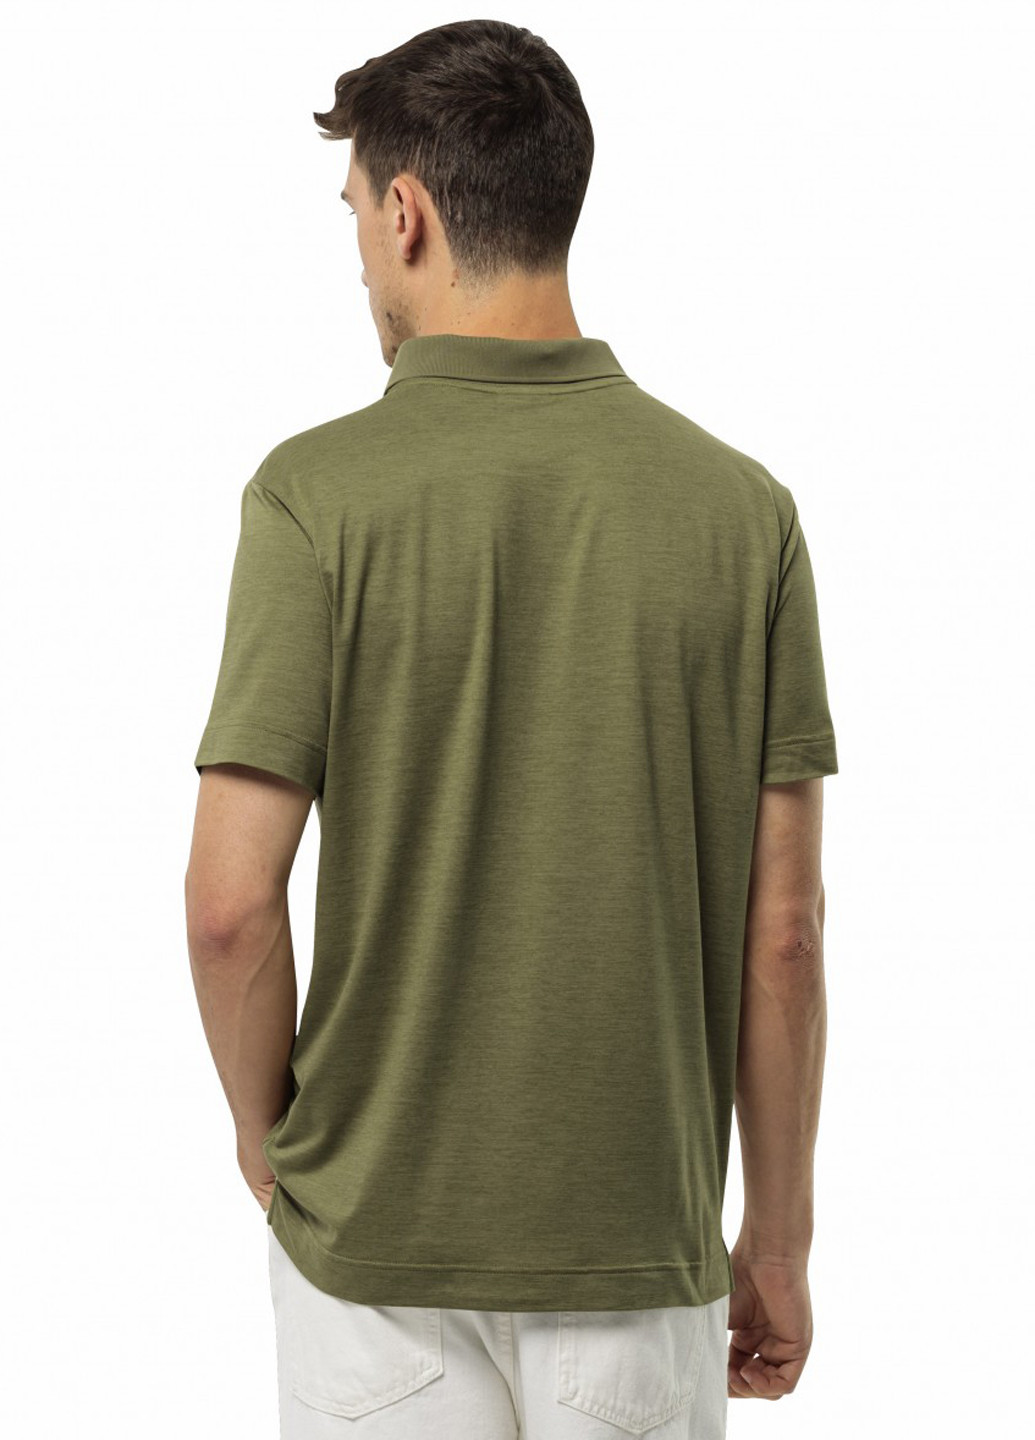 Оливковая футболка-поло для мужчин Jack Wolfskin однотонная